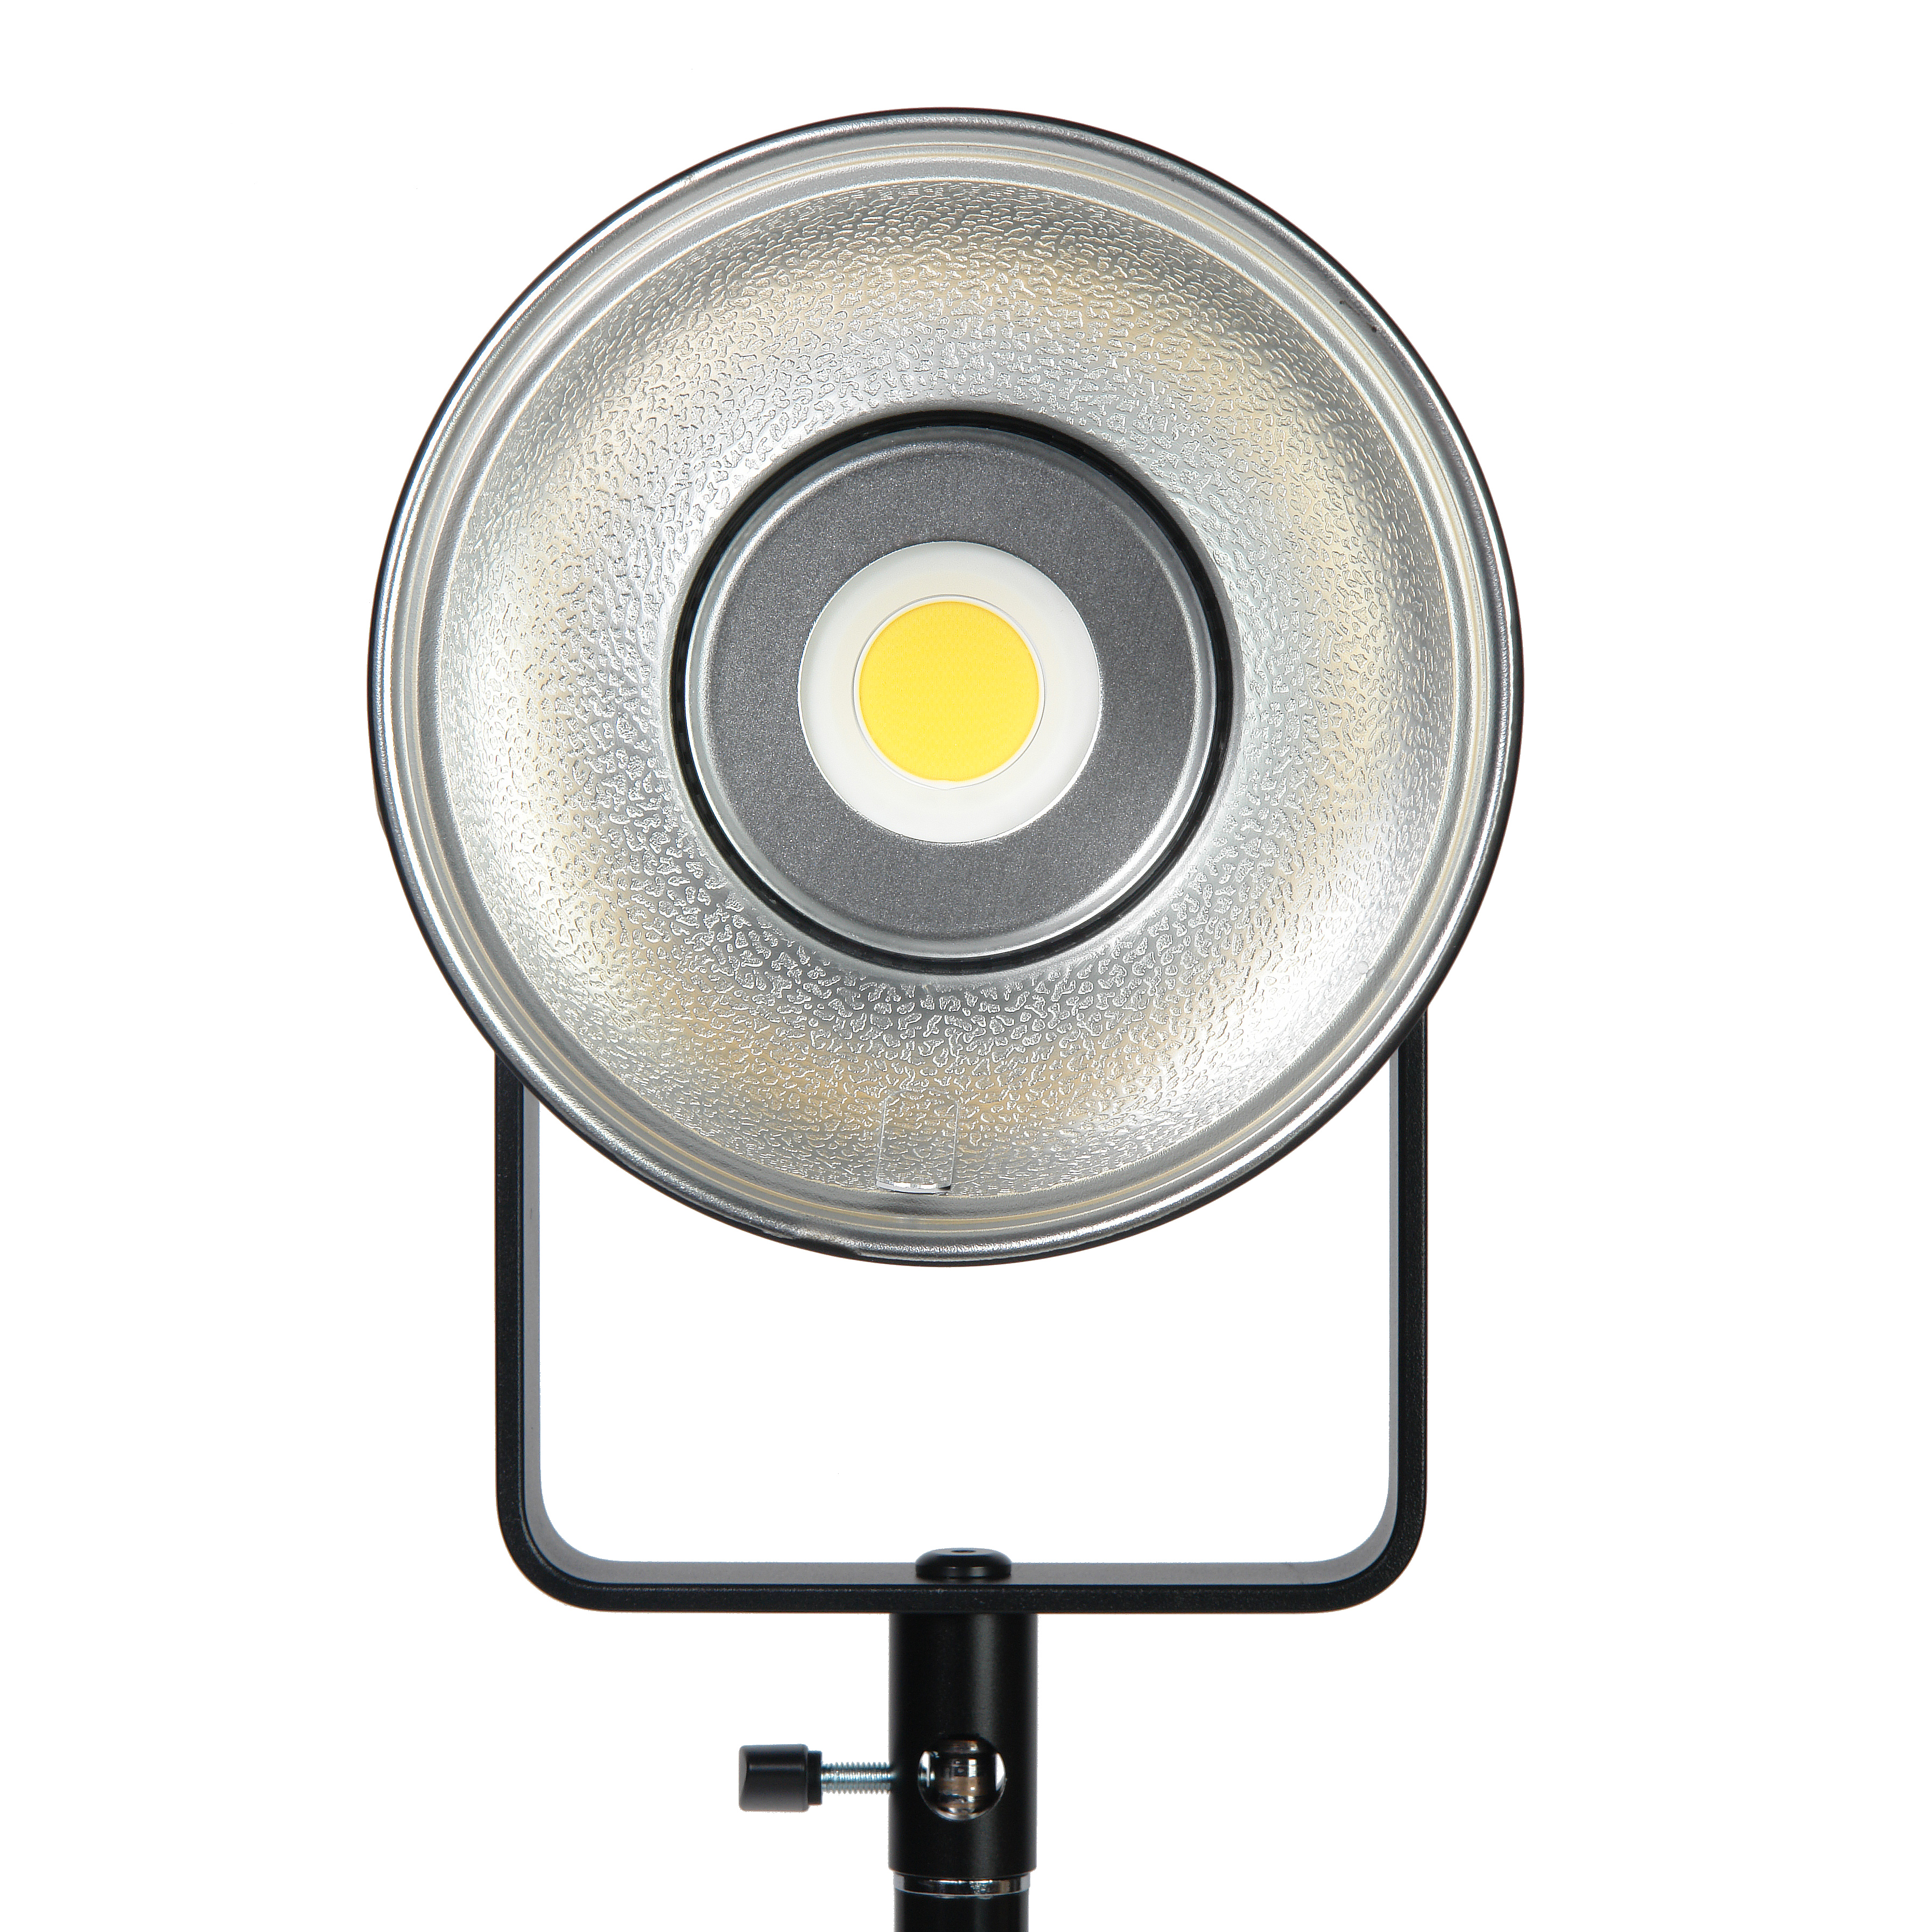 картинка Осветитель светодиодный Godox FV150 с функцией вспышки (без пульта) из Светодиодные LED осветители от магазина Mif-Bond